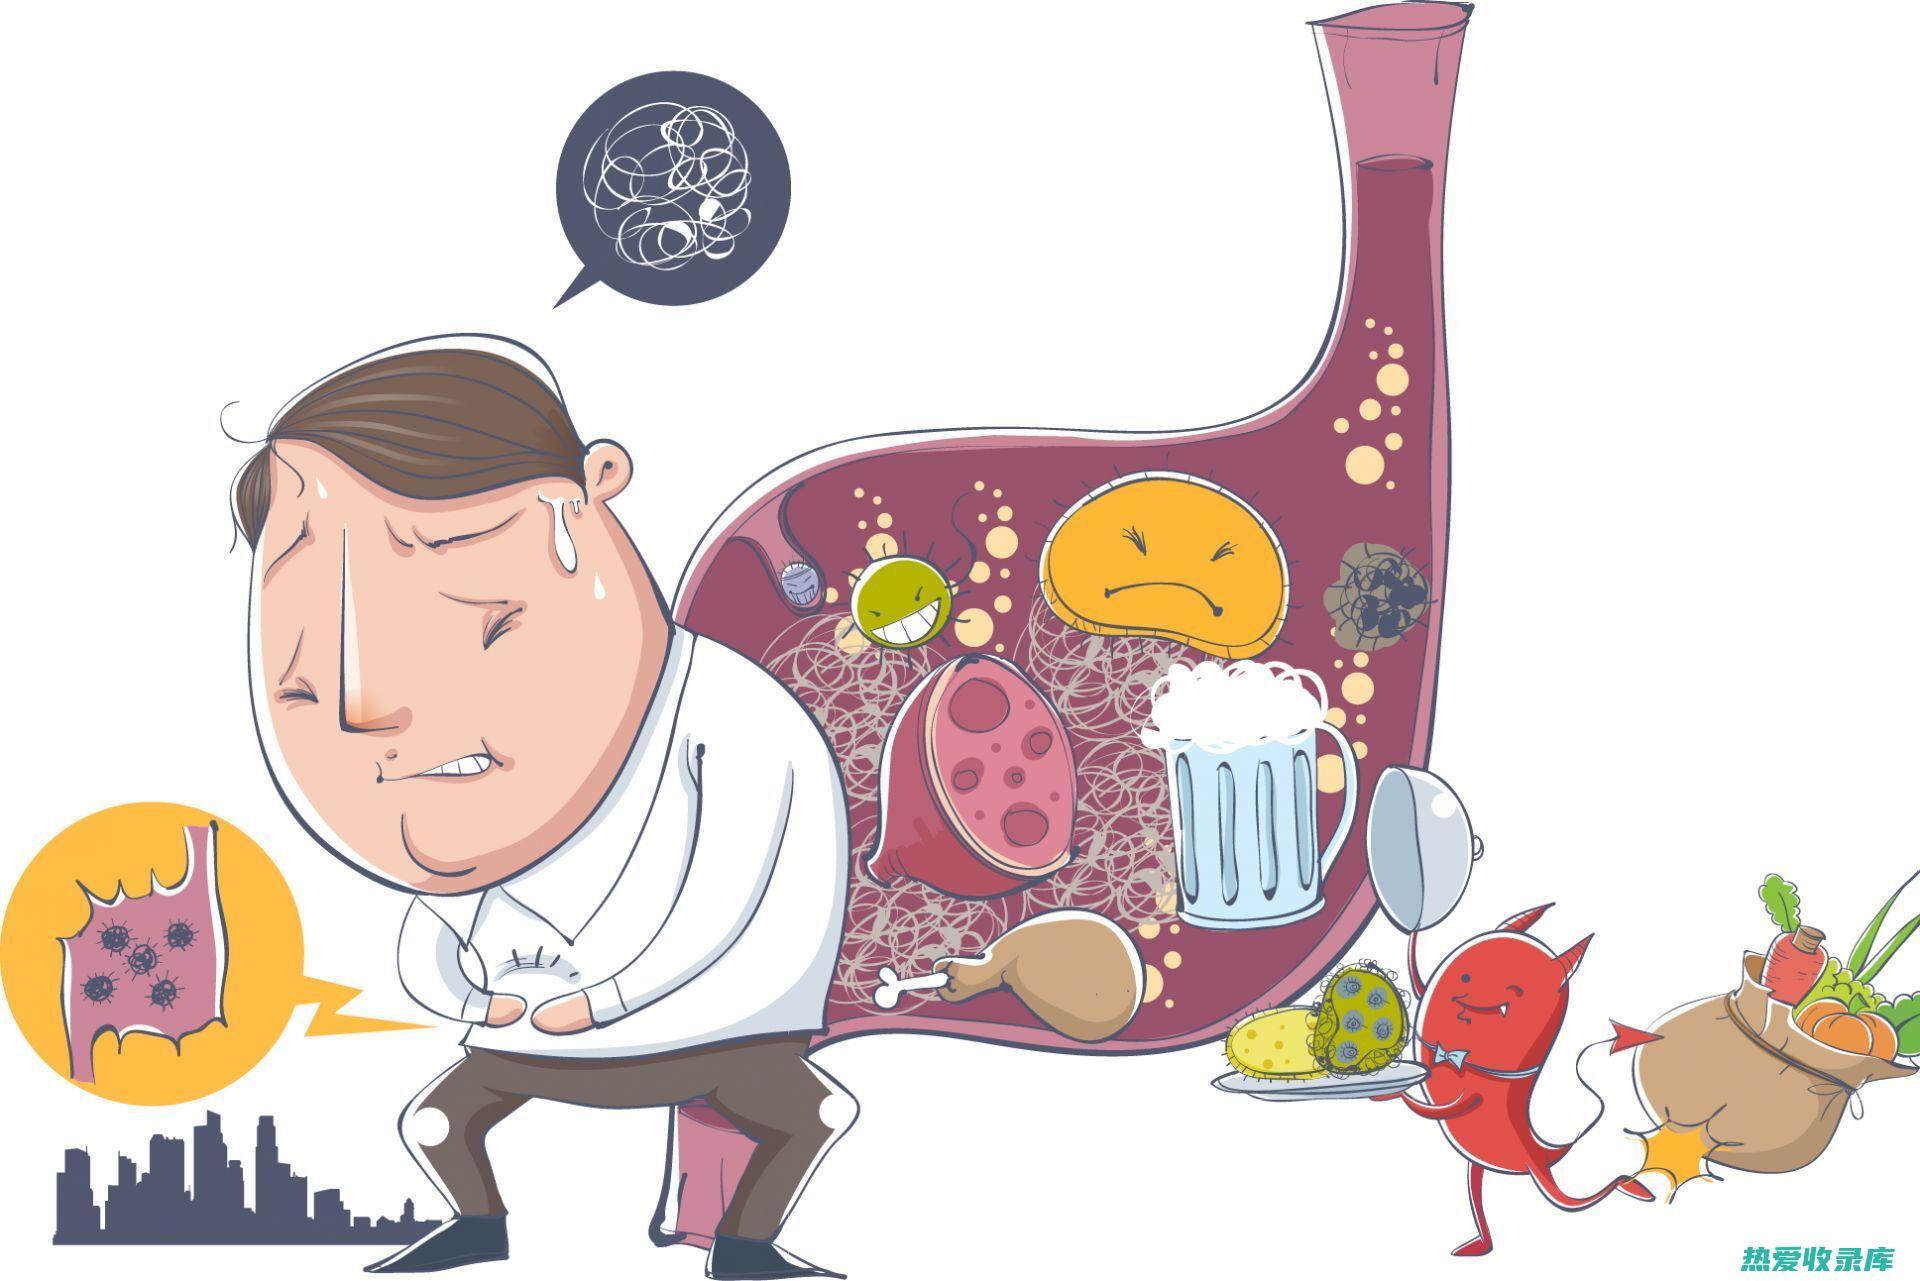 消化不良：过量食用瓜子金可能会导致消化不良，例如腹胀、气体和腹泻。(消化不良过敏)